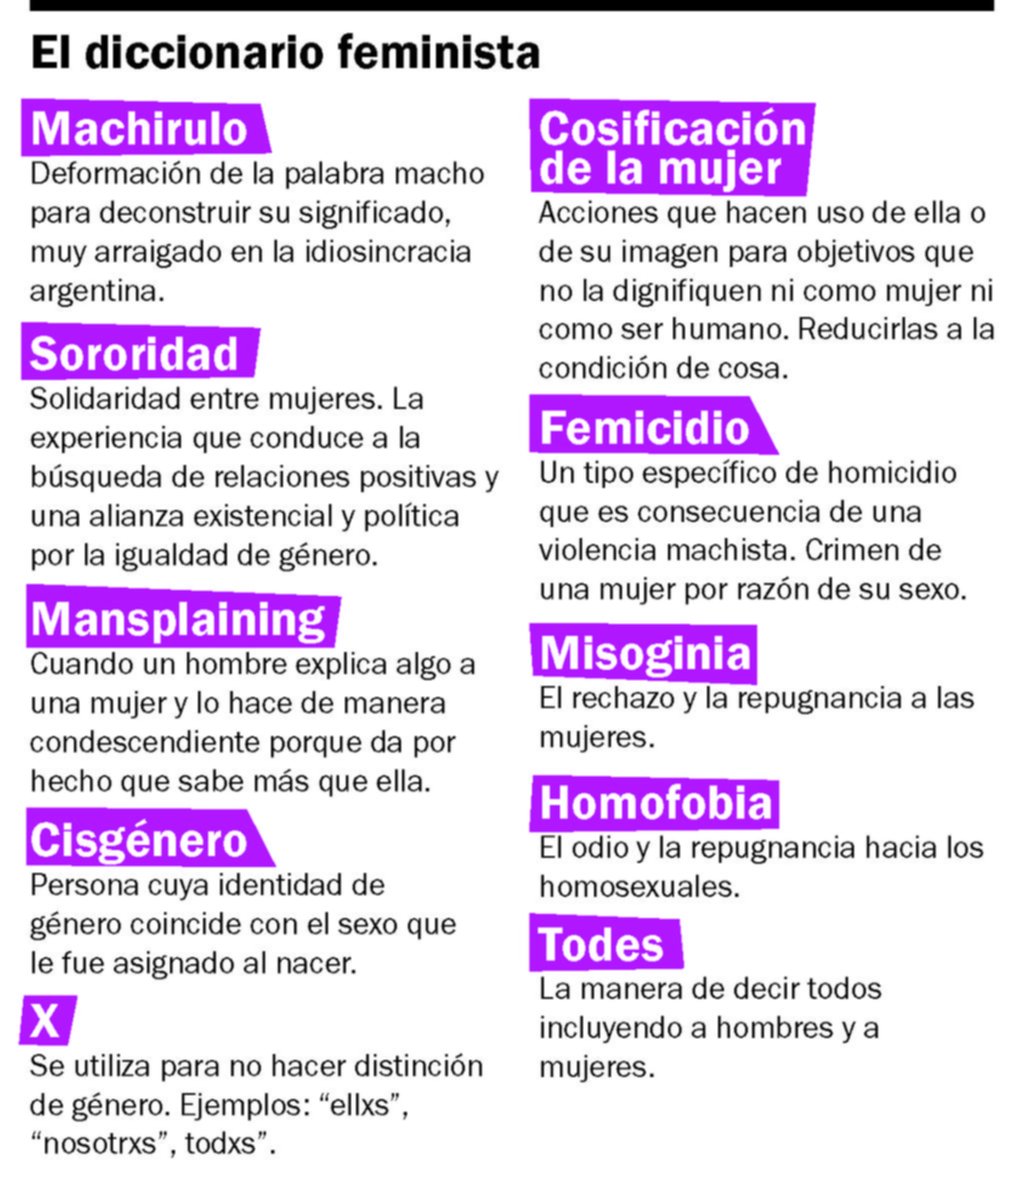 En tiempos de #NiUnaMenos, las palabras que se sumaron al diccionario feminista